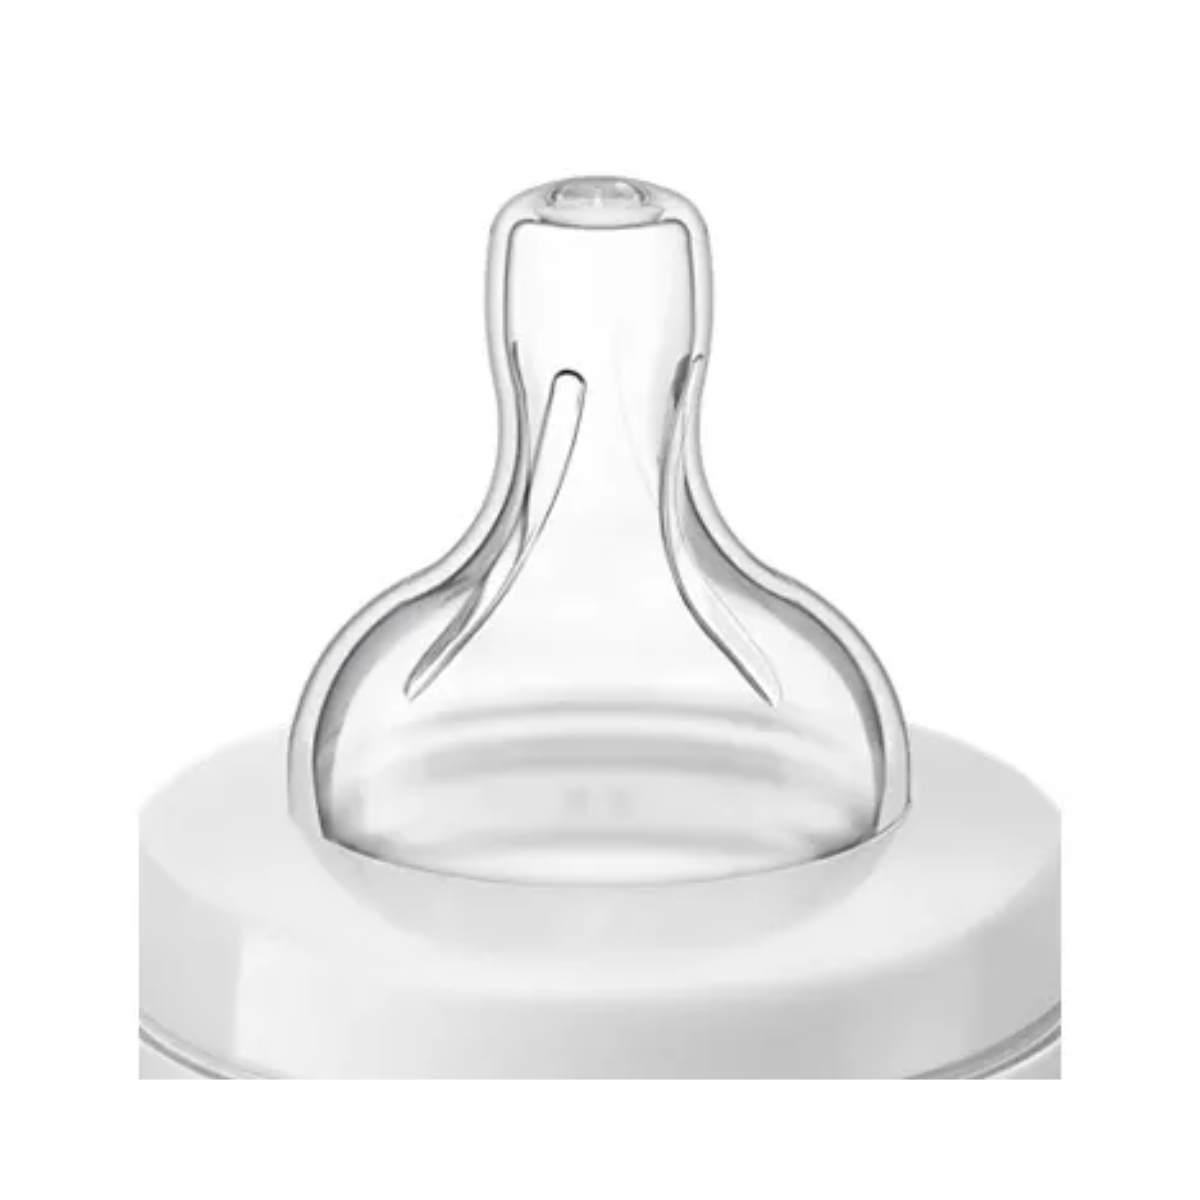 [GIFT] Bình Sữa Philips Avent (shrink wrap) dung tích 125ml/260ml, được chứng minh lâm sàng giúp giảm đầy hơi và quấy khóc